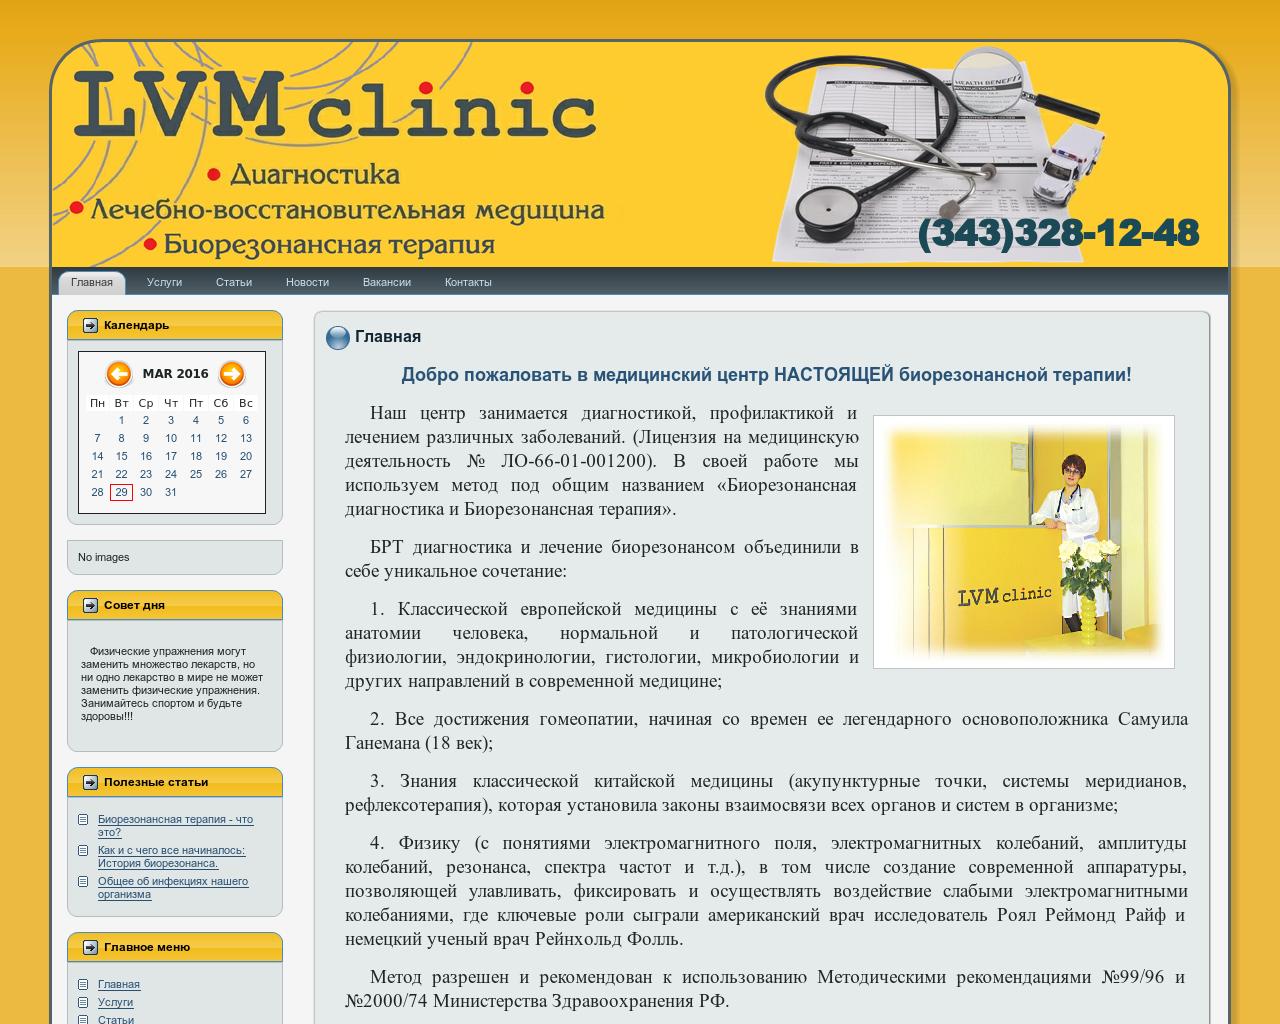 Изображение сайта lvm-clinic.ru в разрешении 1280x1024